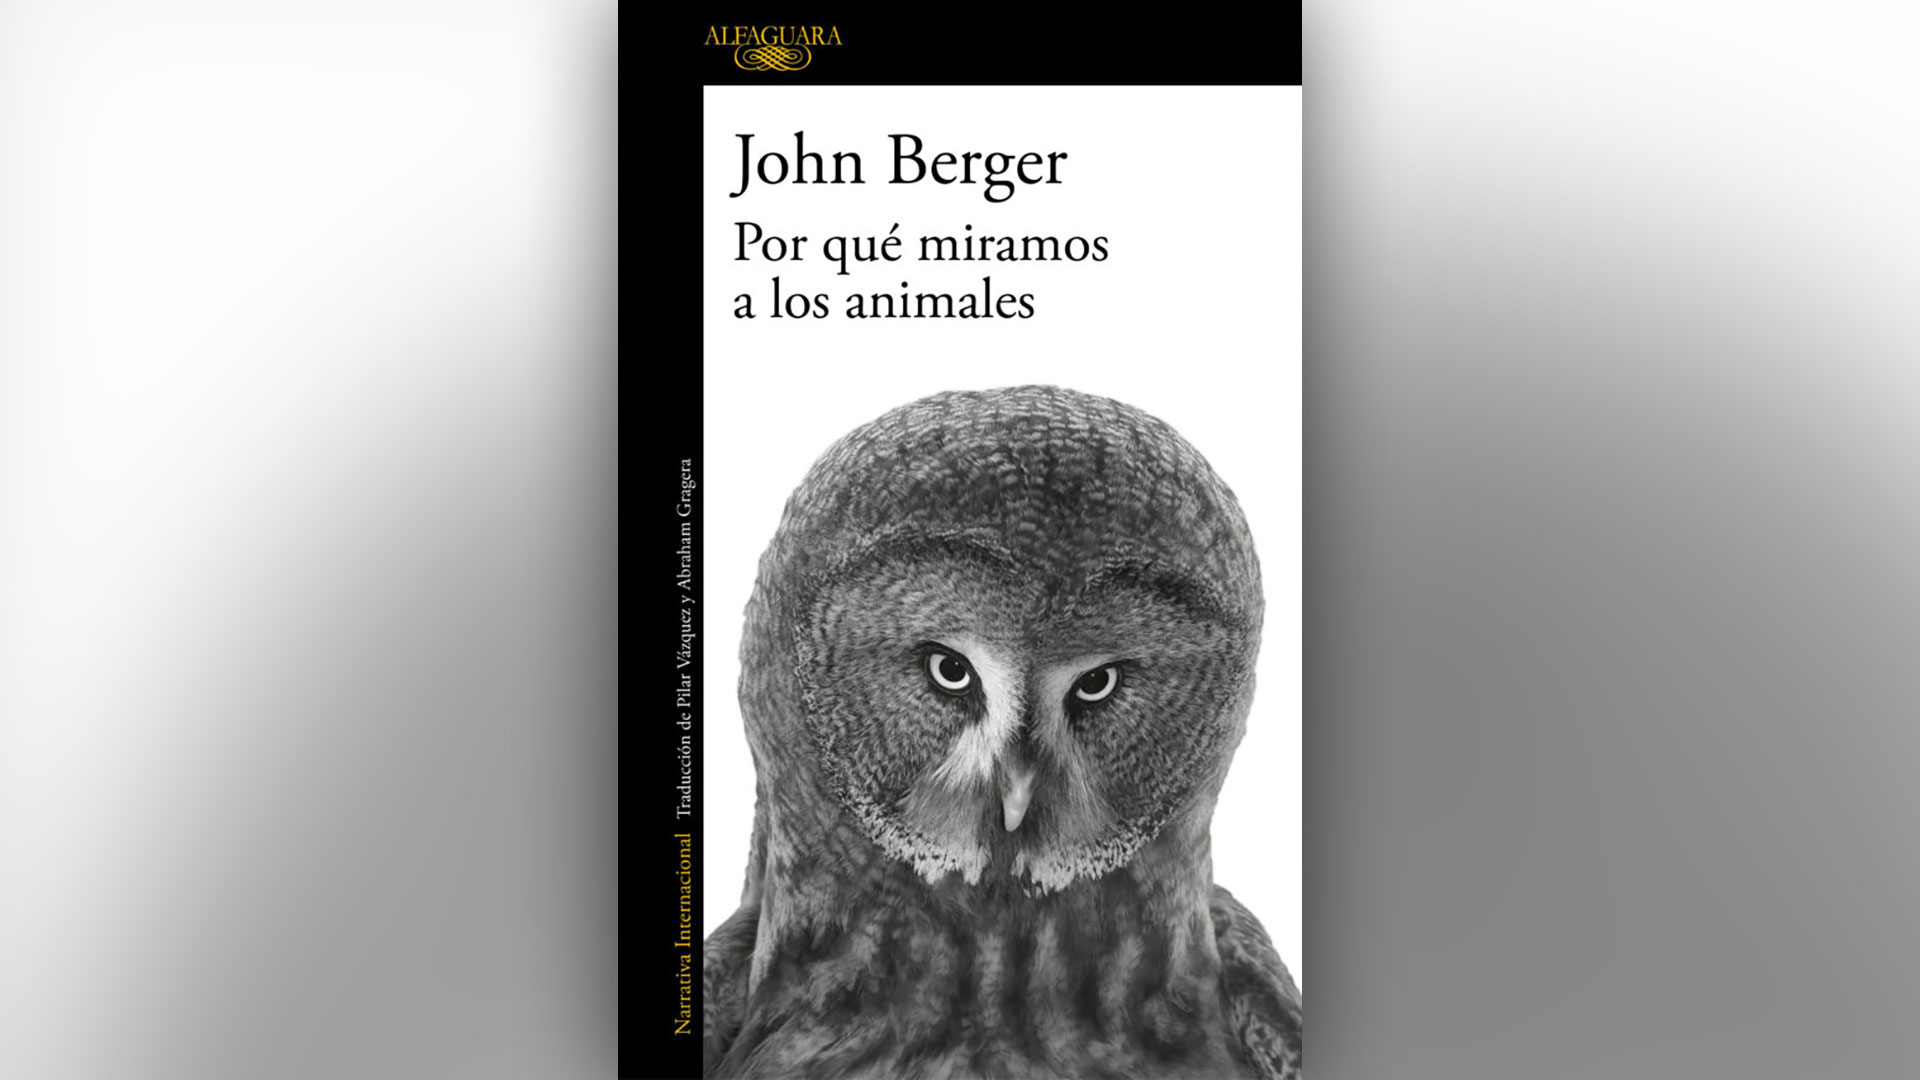 El desaparecido ganador del premio Booker nos dejó algunas claves para mejorar nuestra relación con aquellos con quienes compartimos el planeta:  “Por qué miramos a los animales” de John Berger